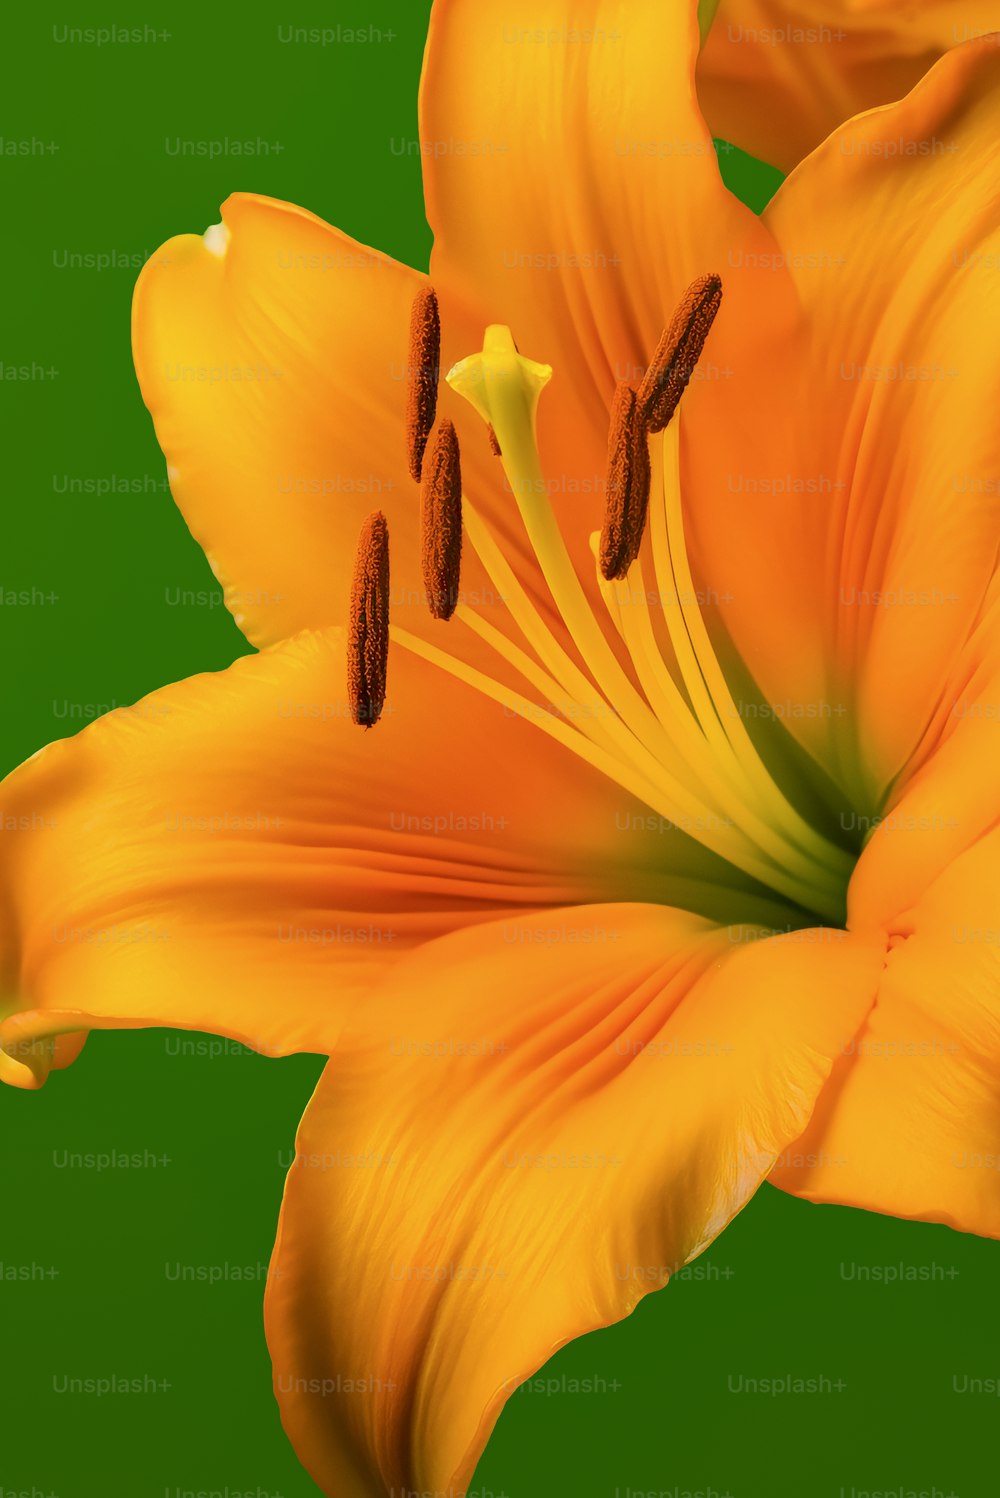 Un primer plano de una flor amarilla sobre un fondo verde